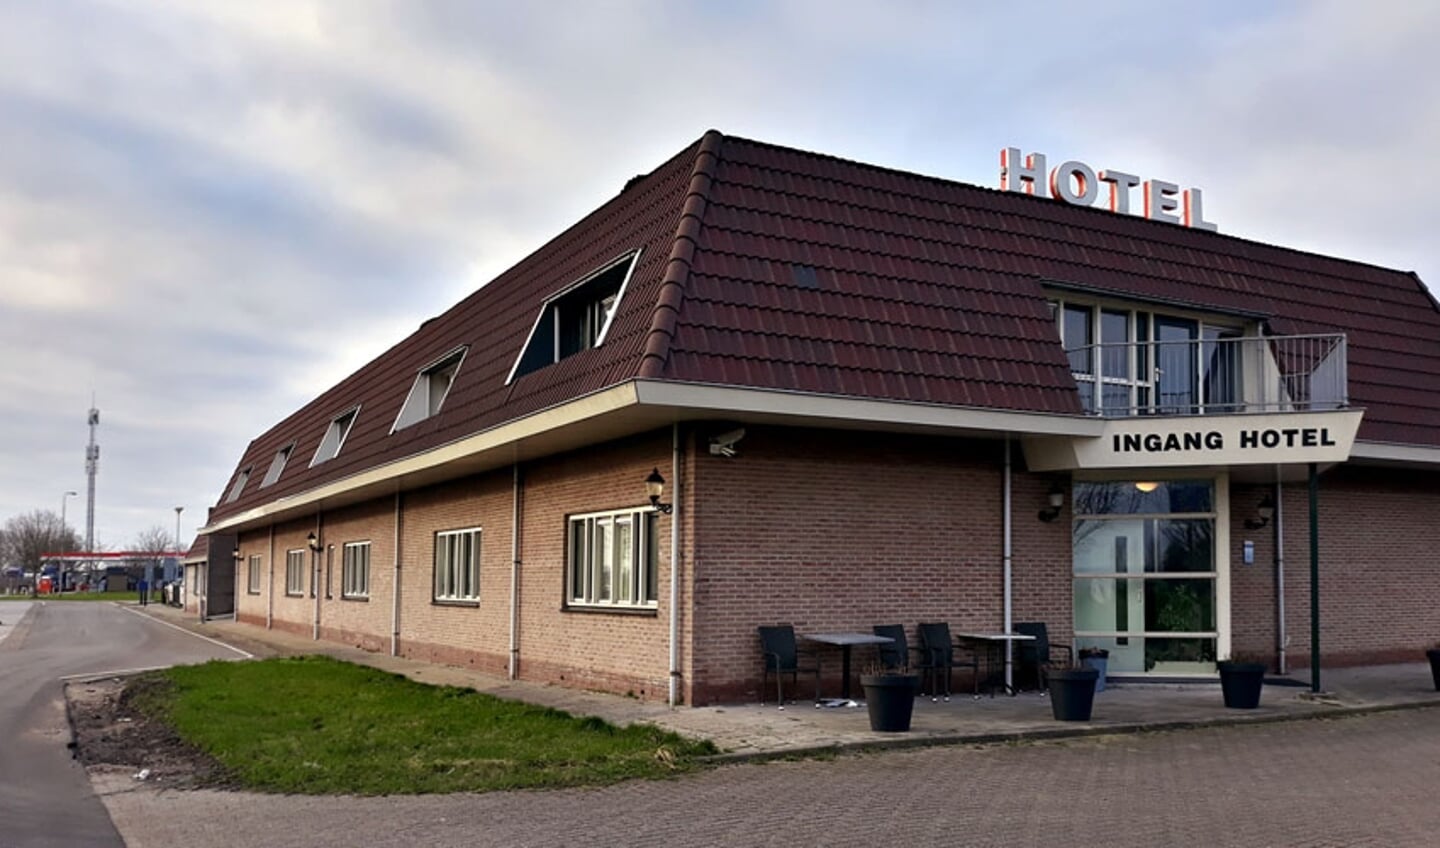 Hotel Zalkerbroek als nieuwe Kamper crisisnoodopvang voor asielzoekers